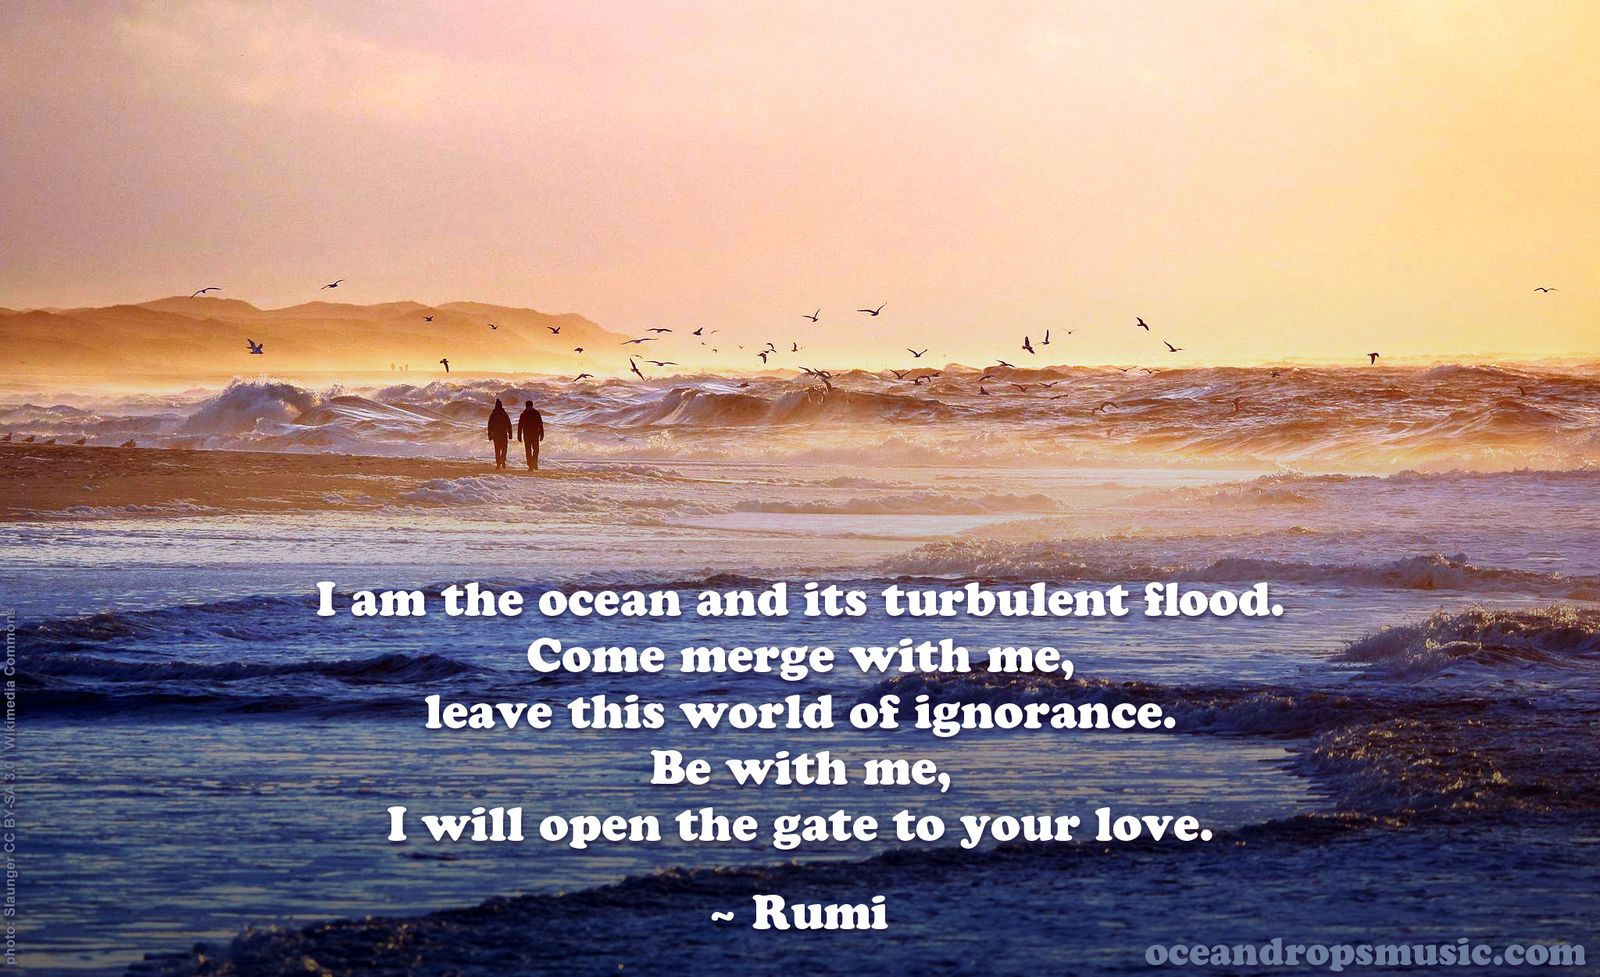 Ocean Drops Music - Rumi Quotes